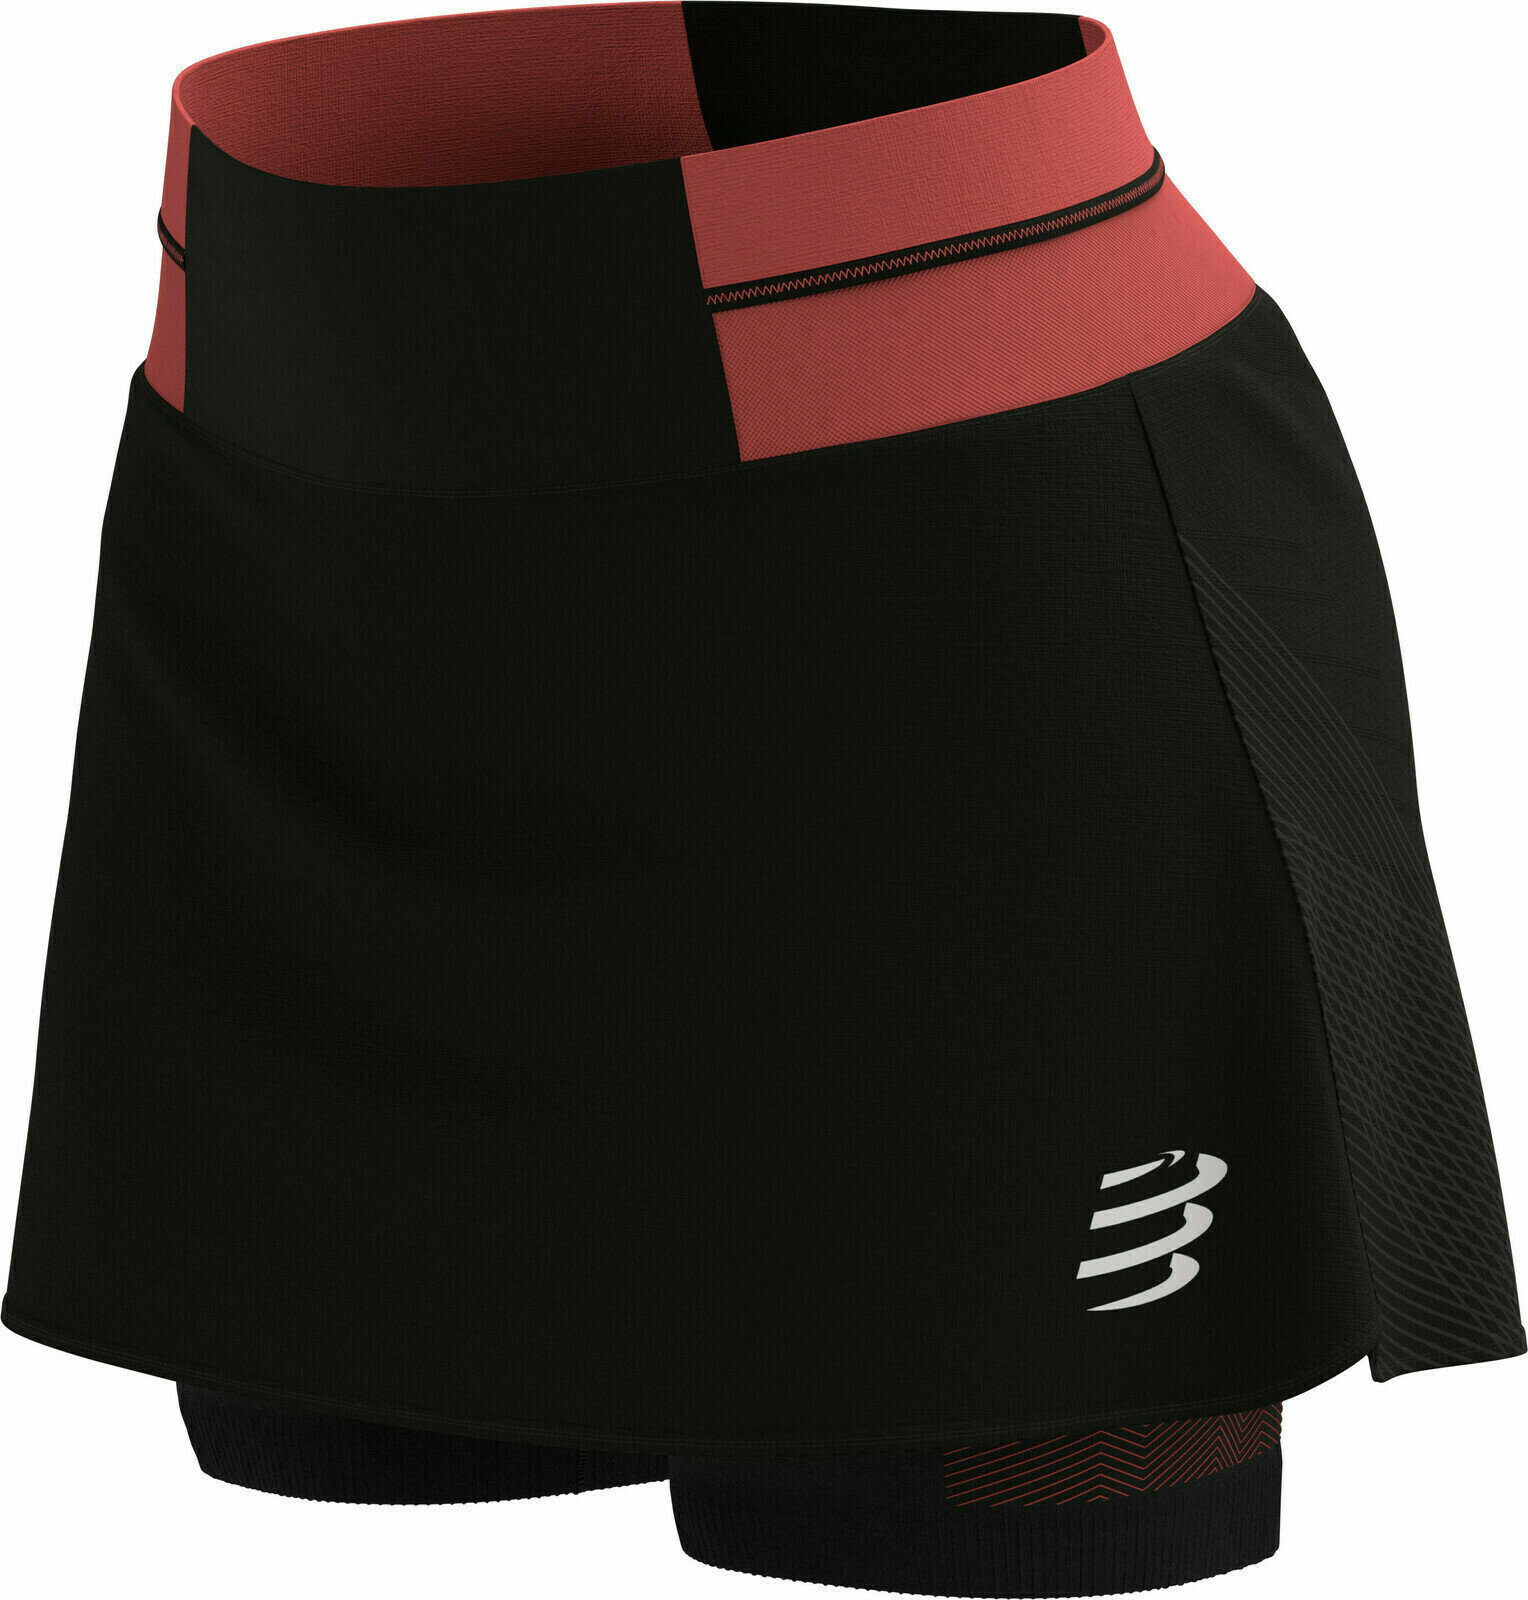 Běžecké kraťasy
 Compressport Performance Skirt Black/Coral L Běžecké kraťasy